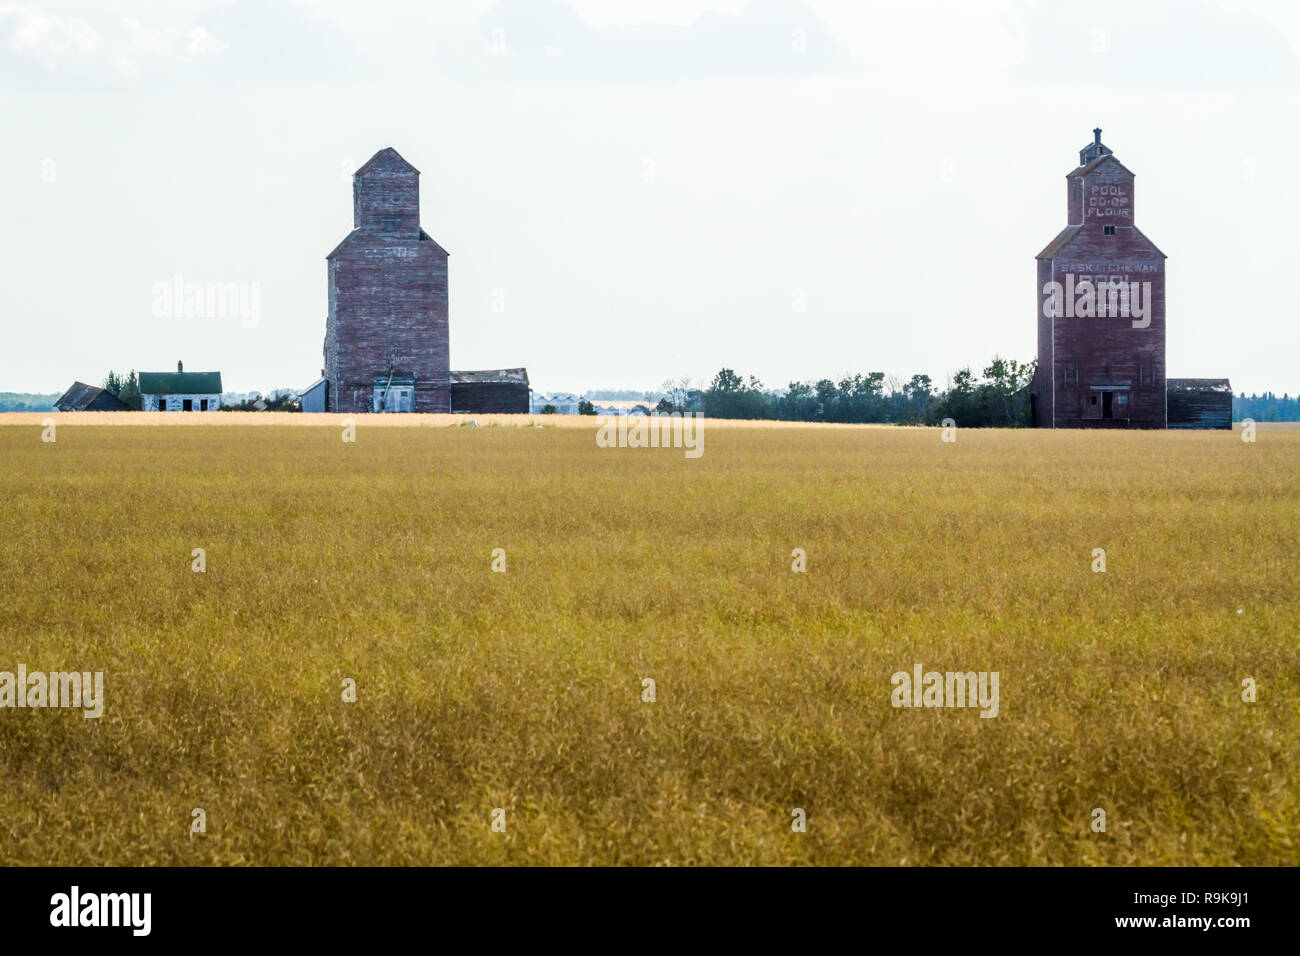 Alte Getreidespeicher in der Ortschaft Lepine, Saskatchewan, Kanada, 100 km nördlich von Saskatoon. Landwirtschaft treibt die Wirtschaft in der Provinz von Weizen Stockfoto